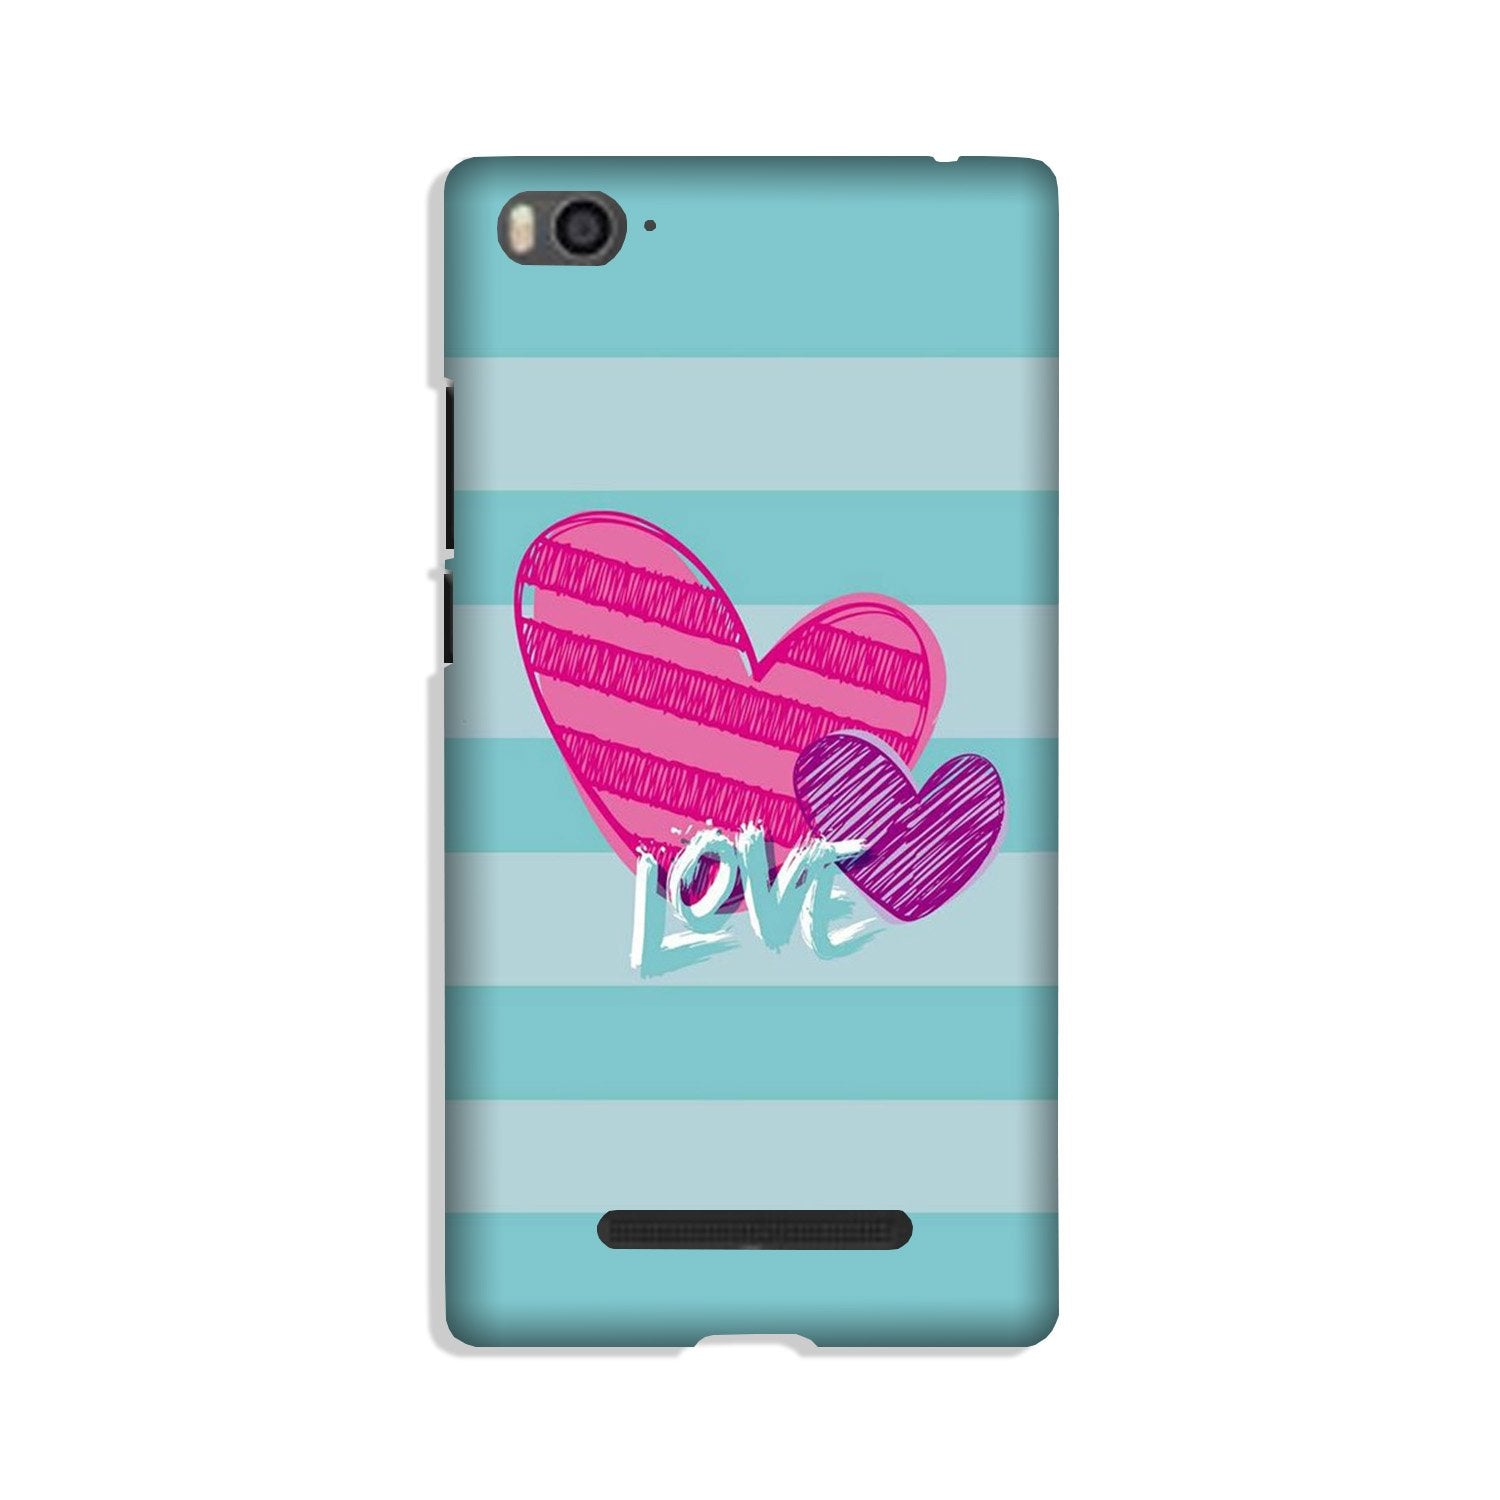 Love Case for Xiaomi Mi 4i (Design No. 299)